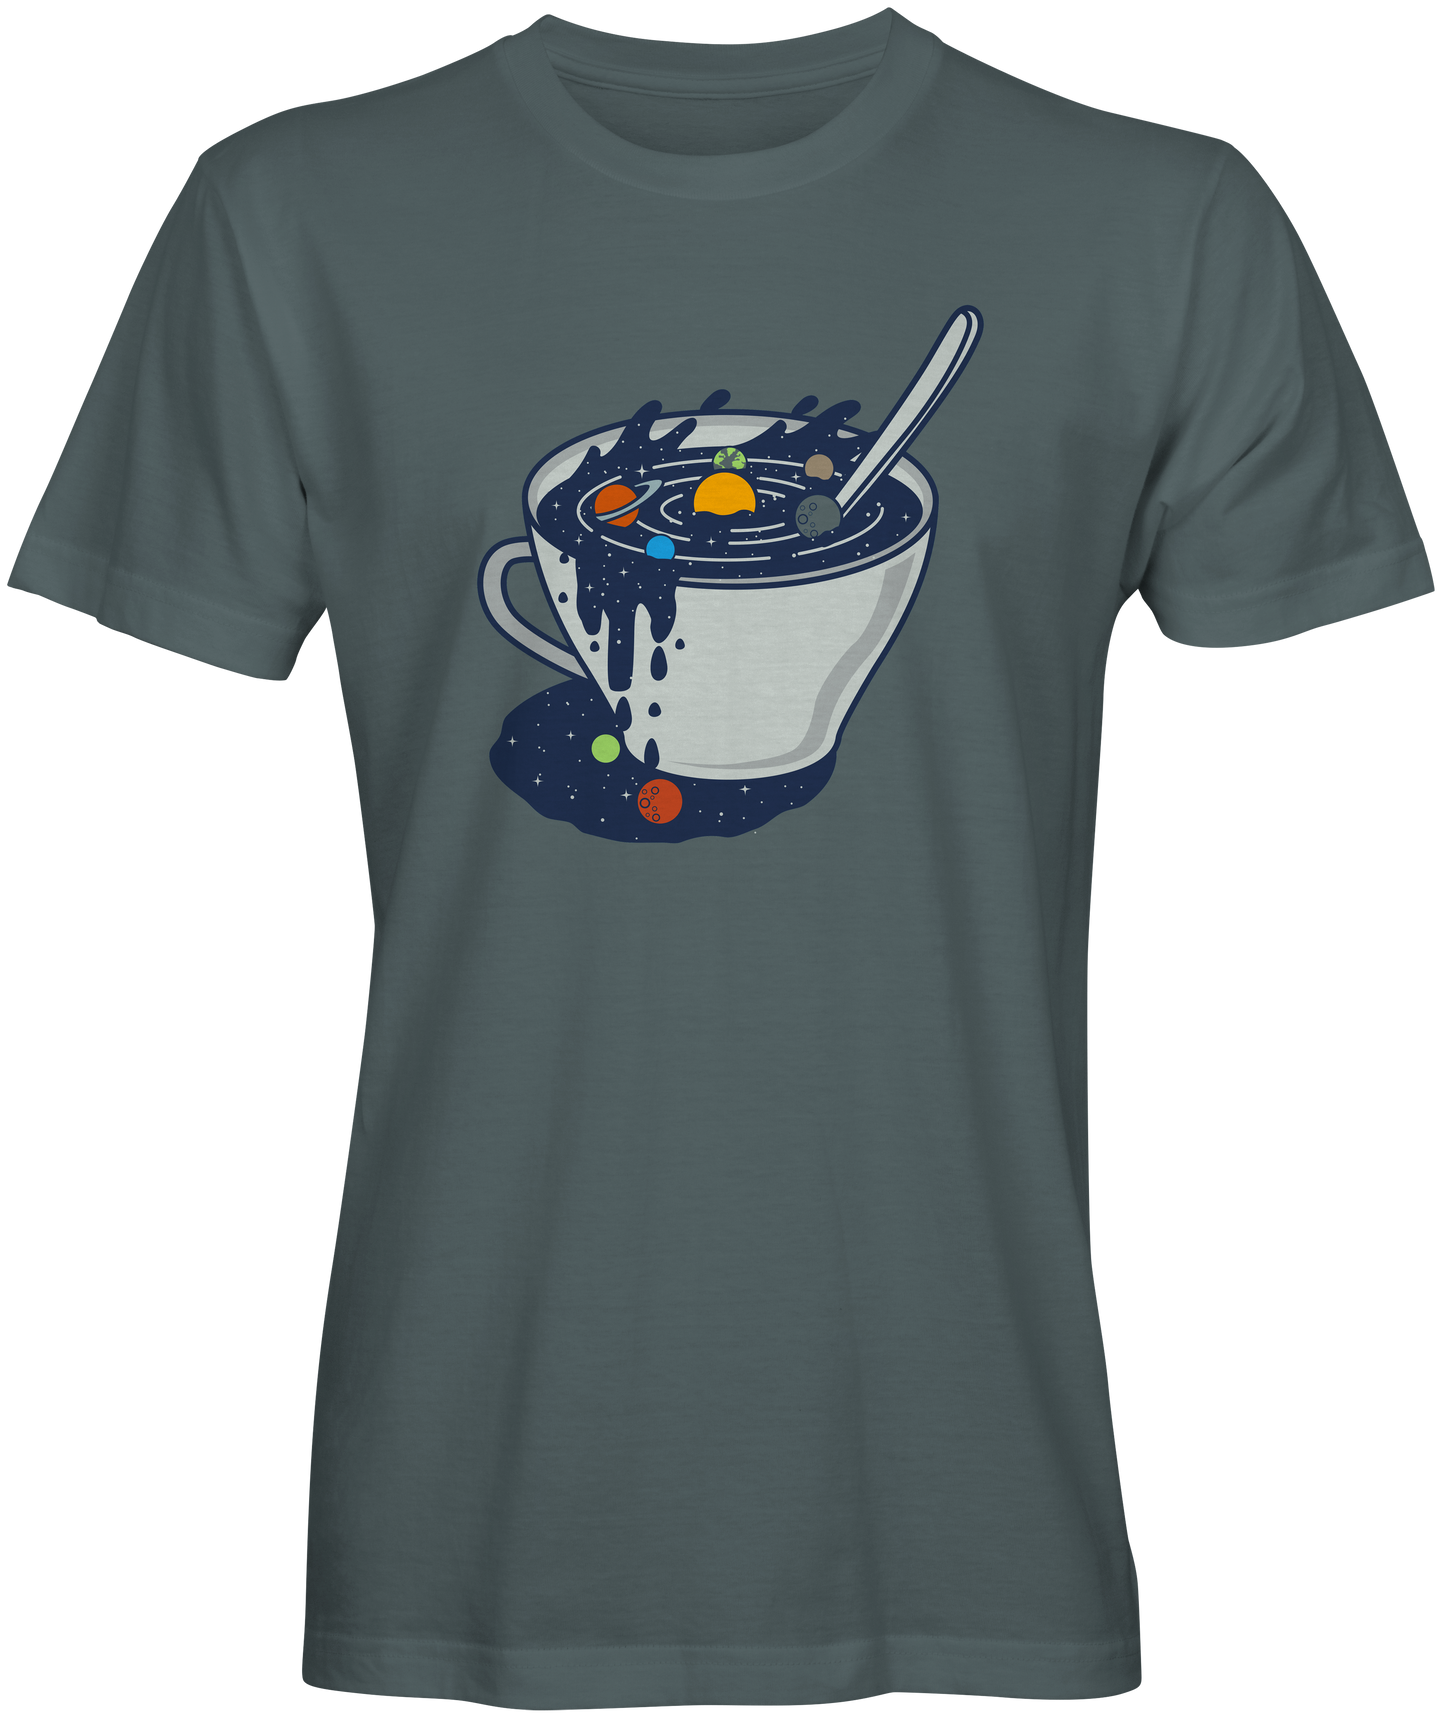 The Galaxy In A Coffee Mug T-shirts